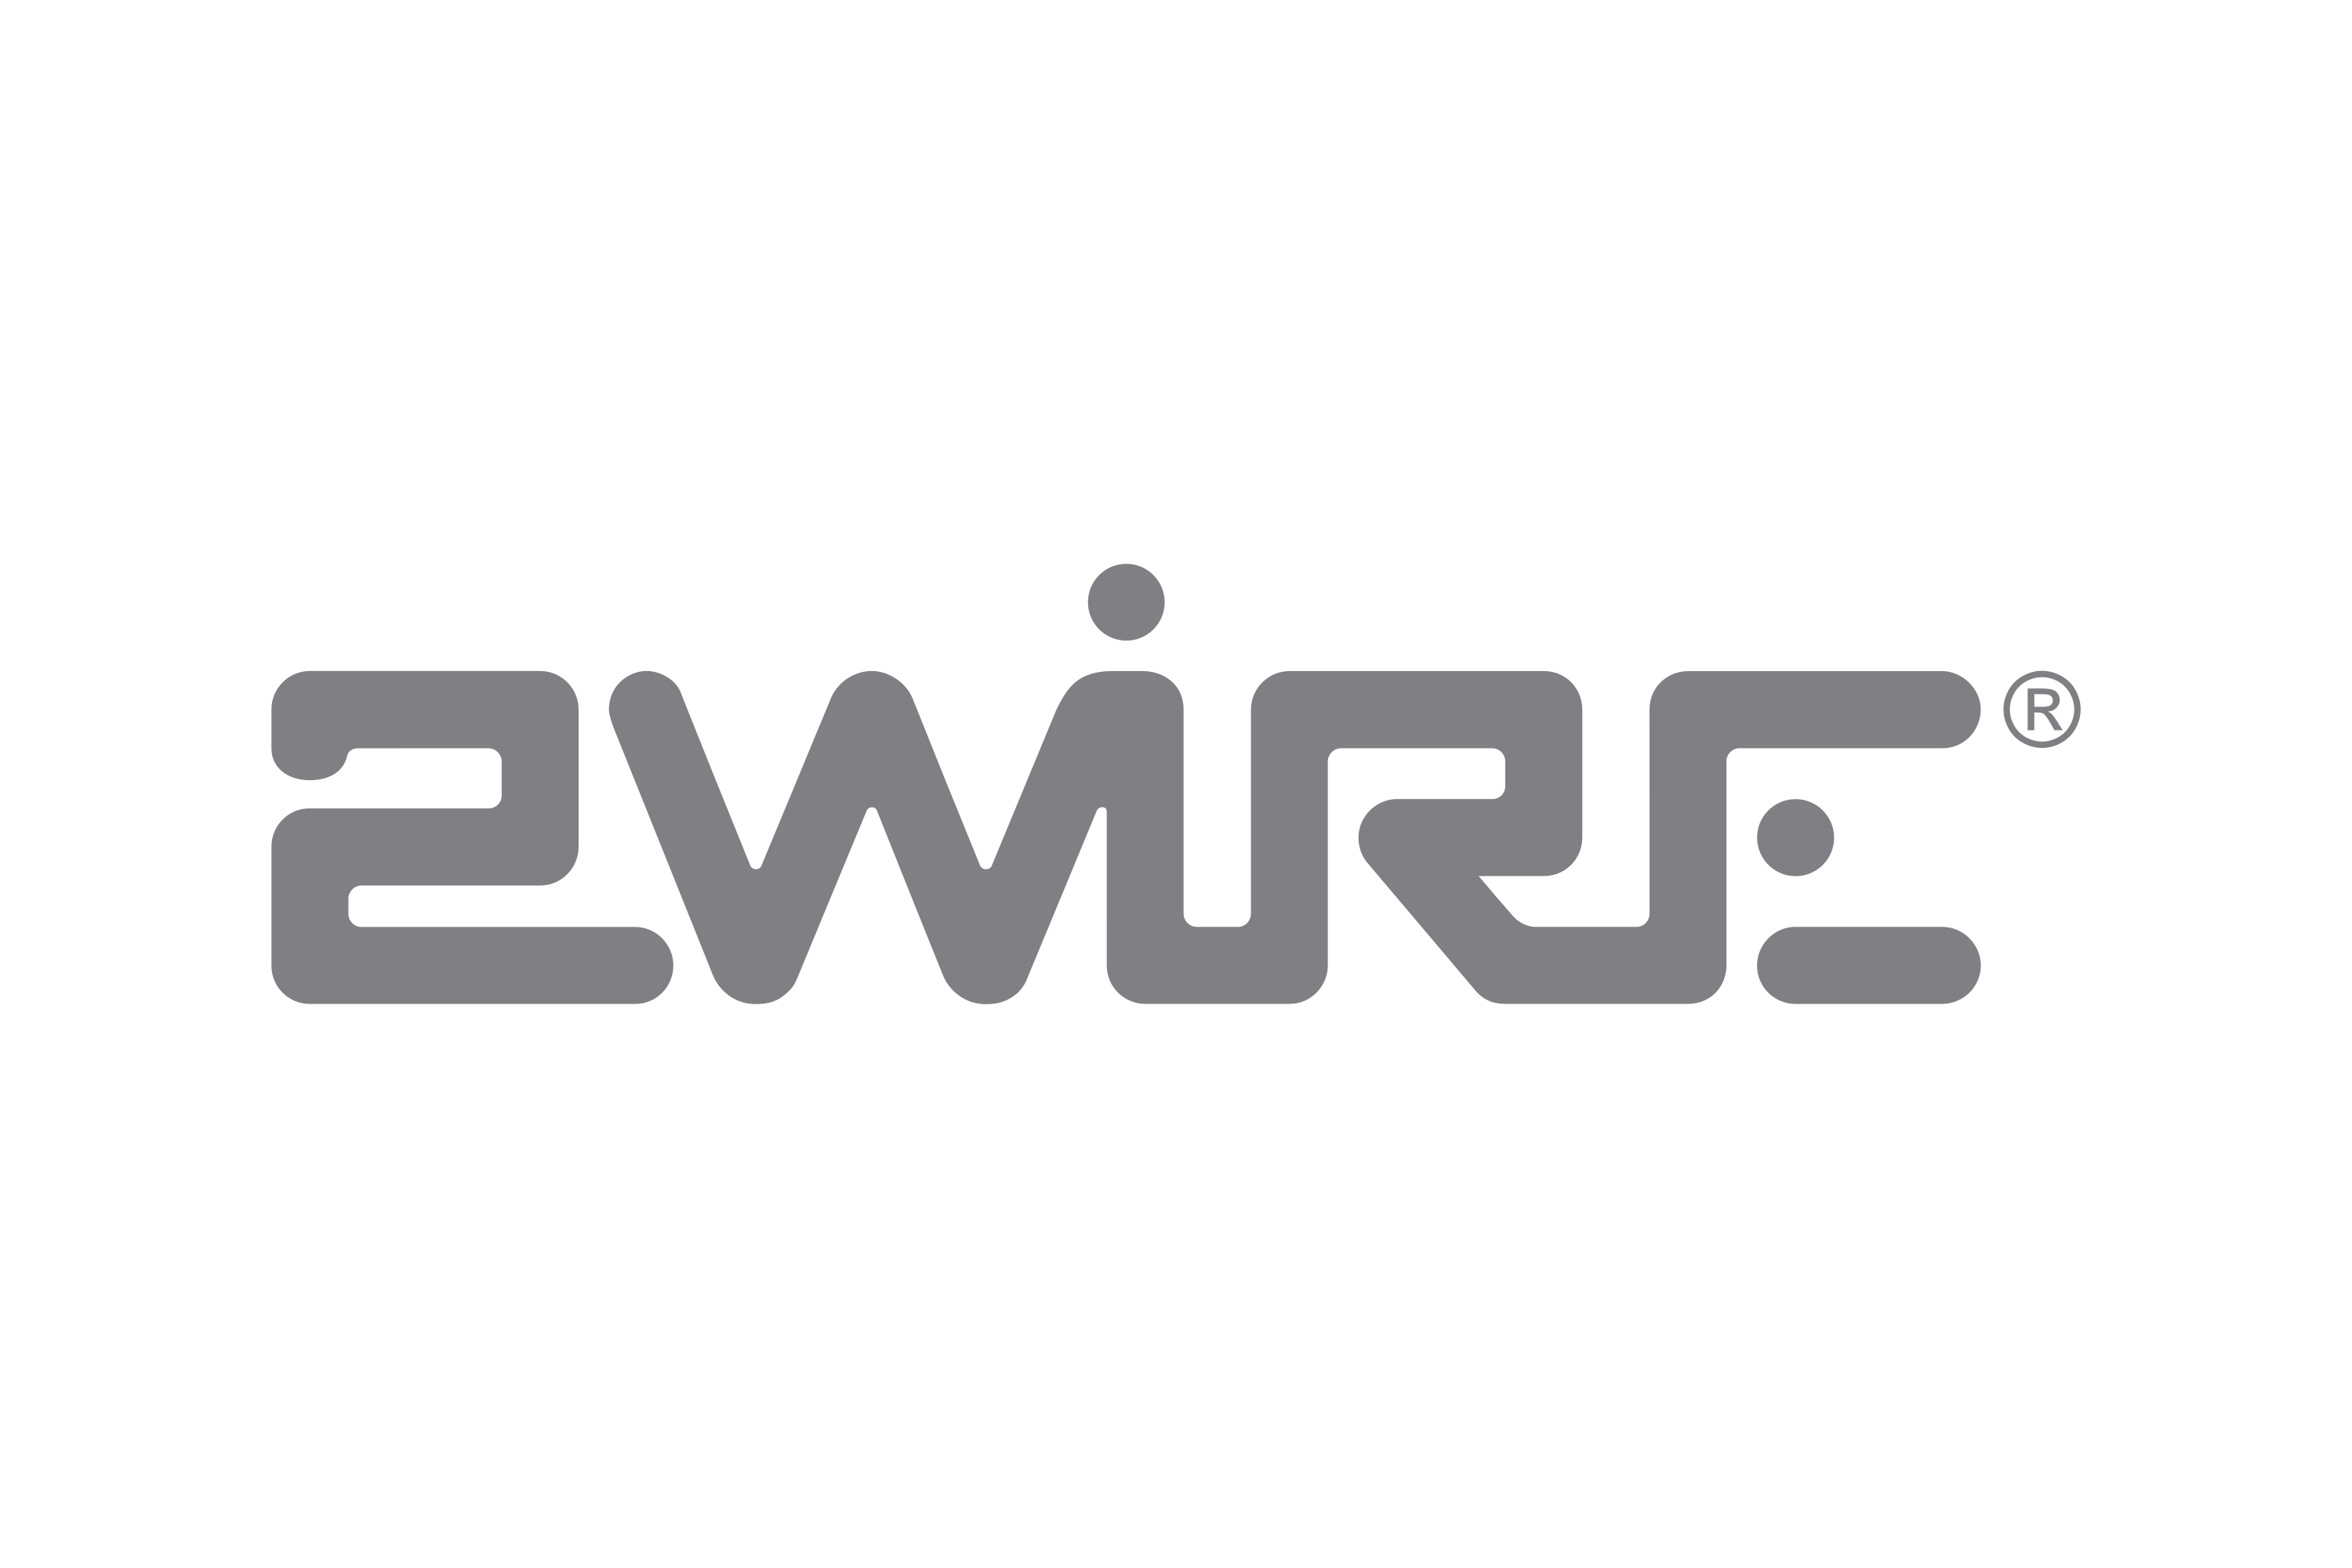 2Wire Logo